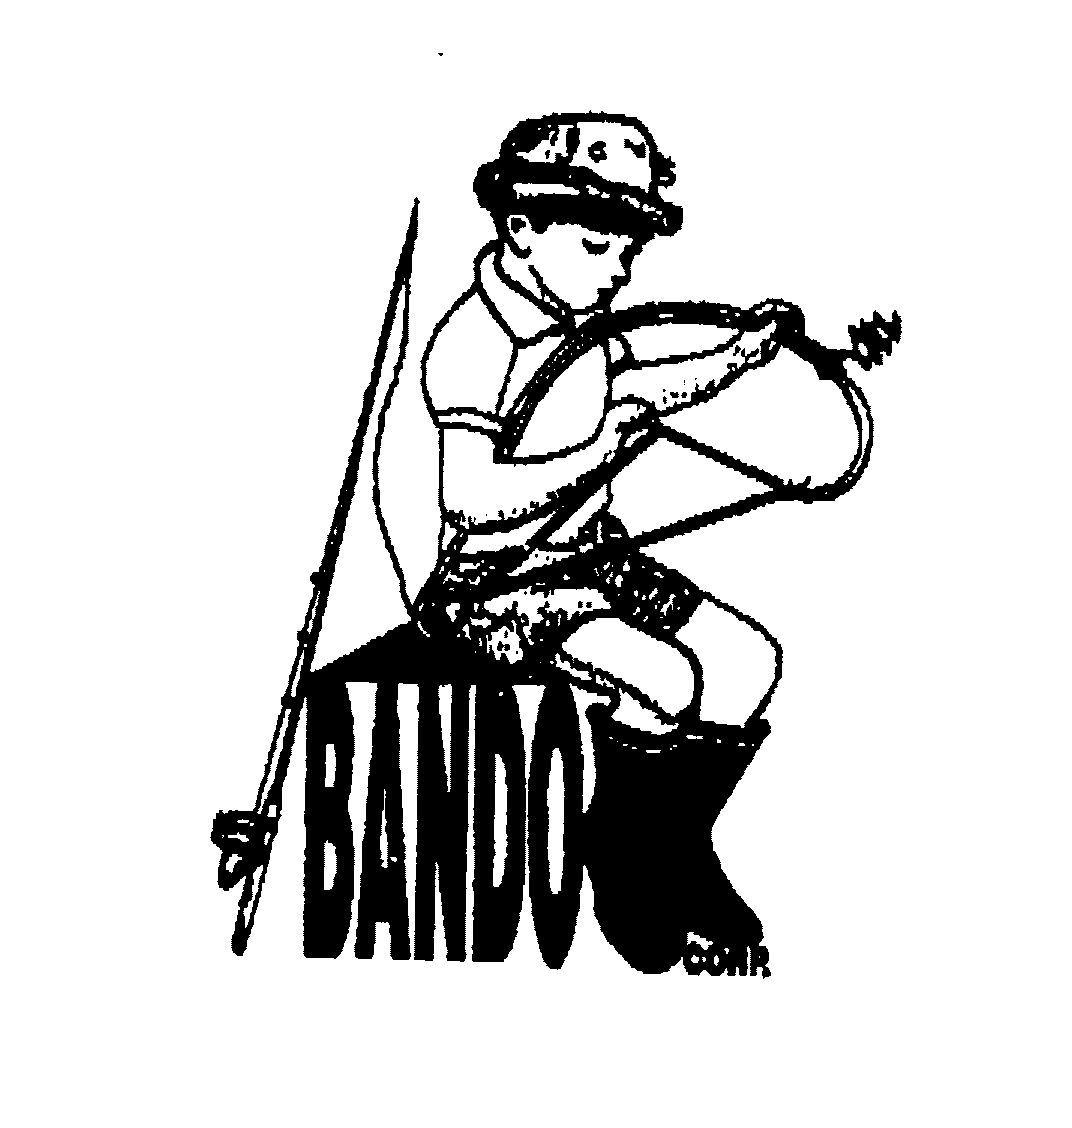 Trademark Logo BANDO